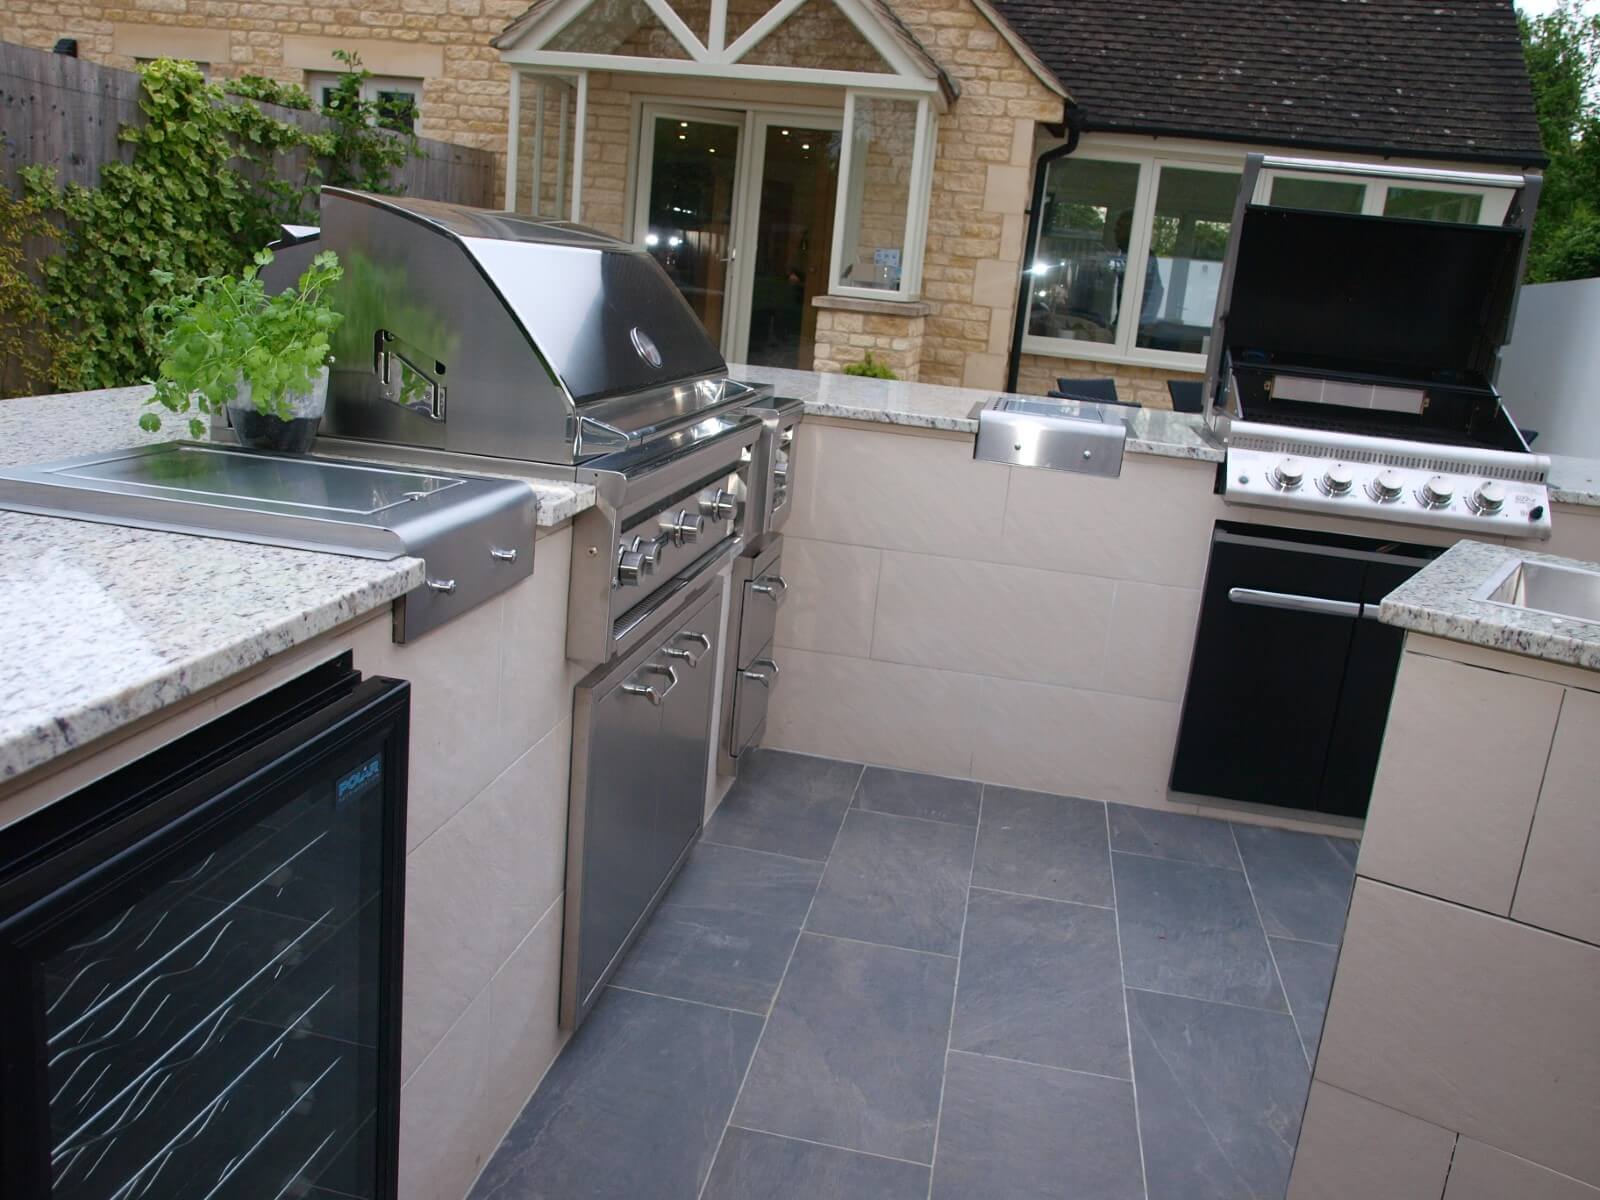 Outdoor Kitchen - Granite worktop, inner tiled walls